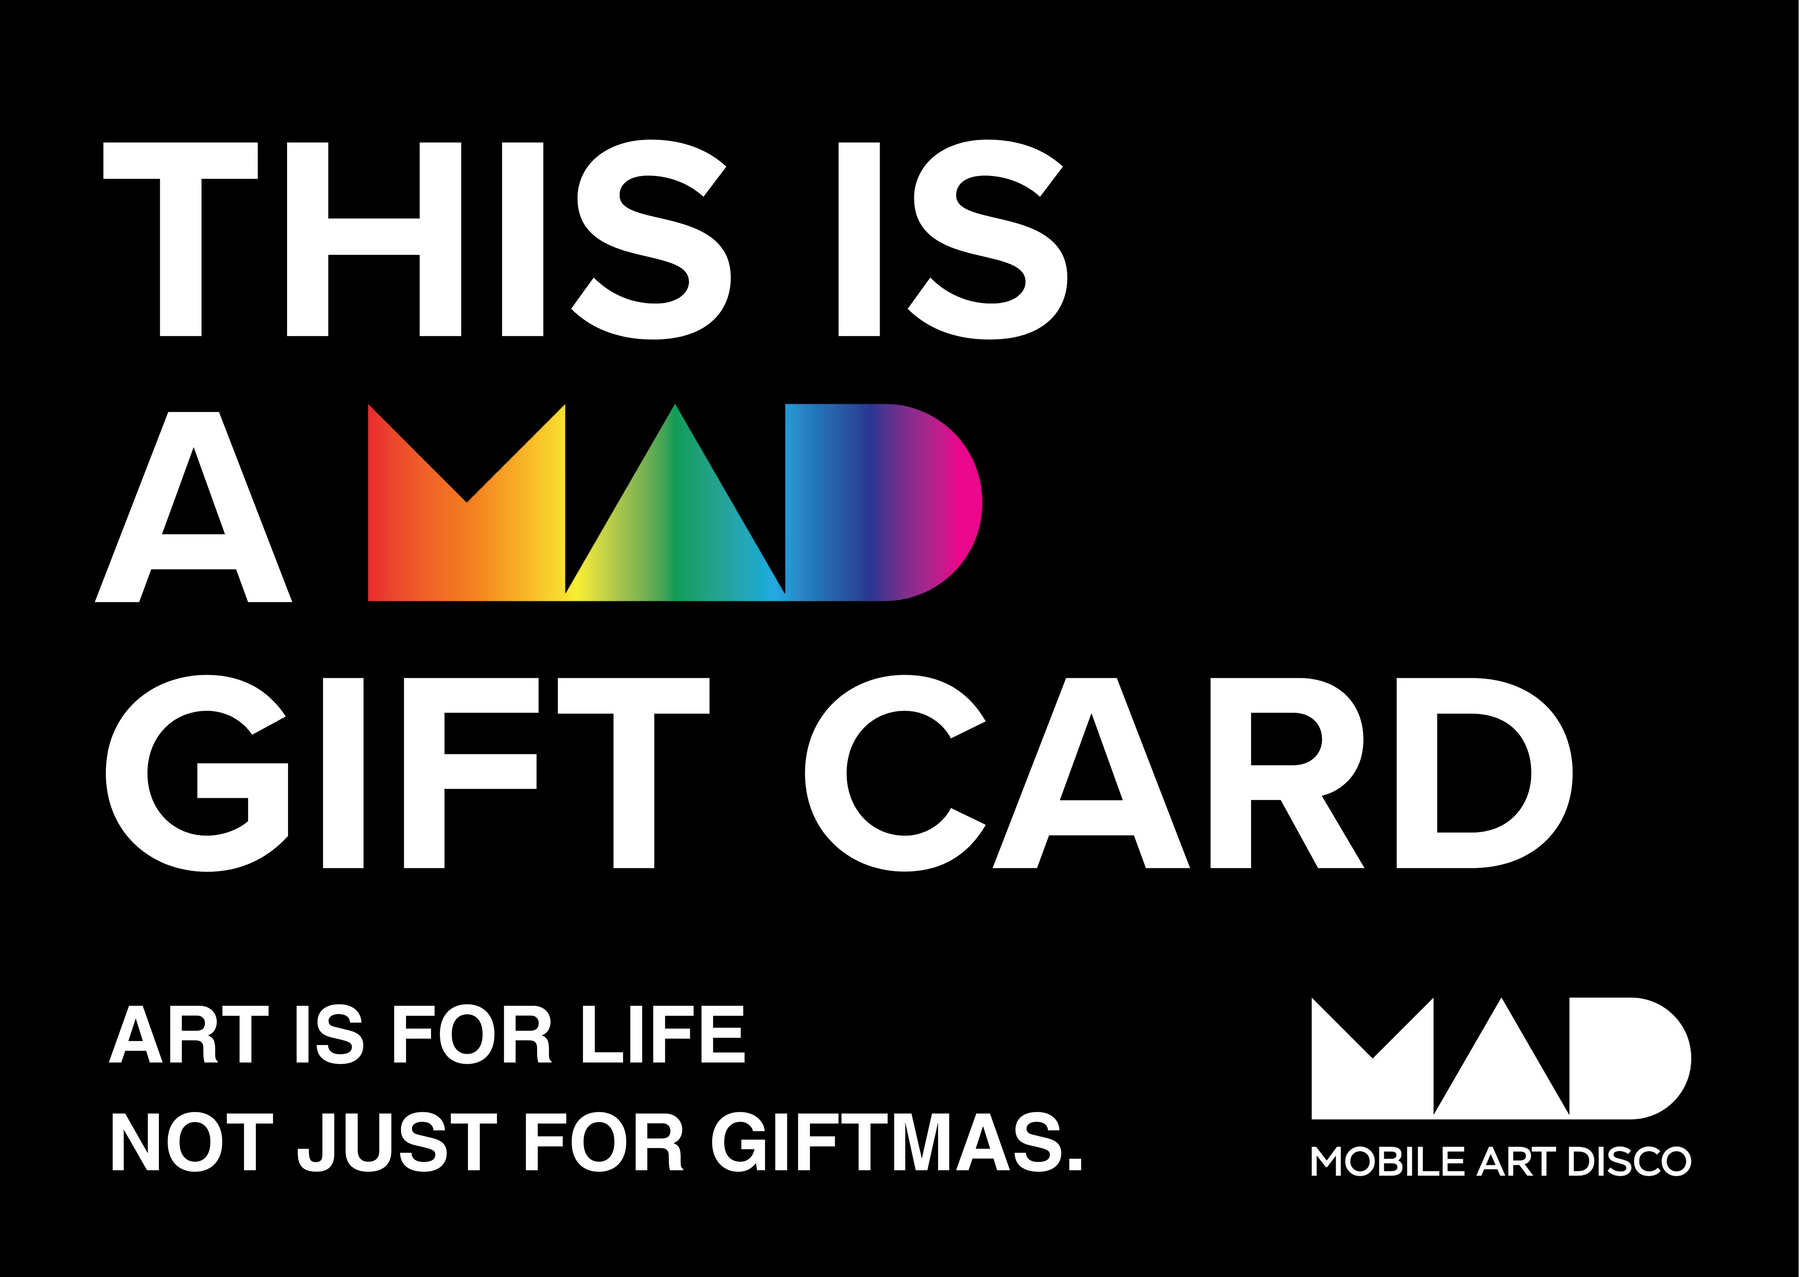 Mobile Art Disco Xmas Gift Card